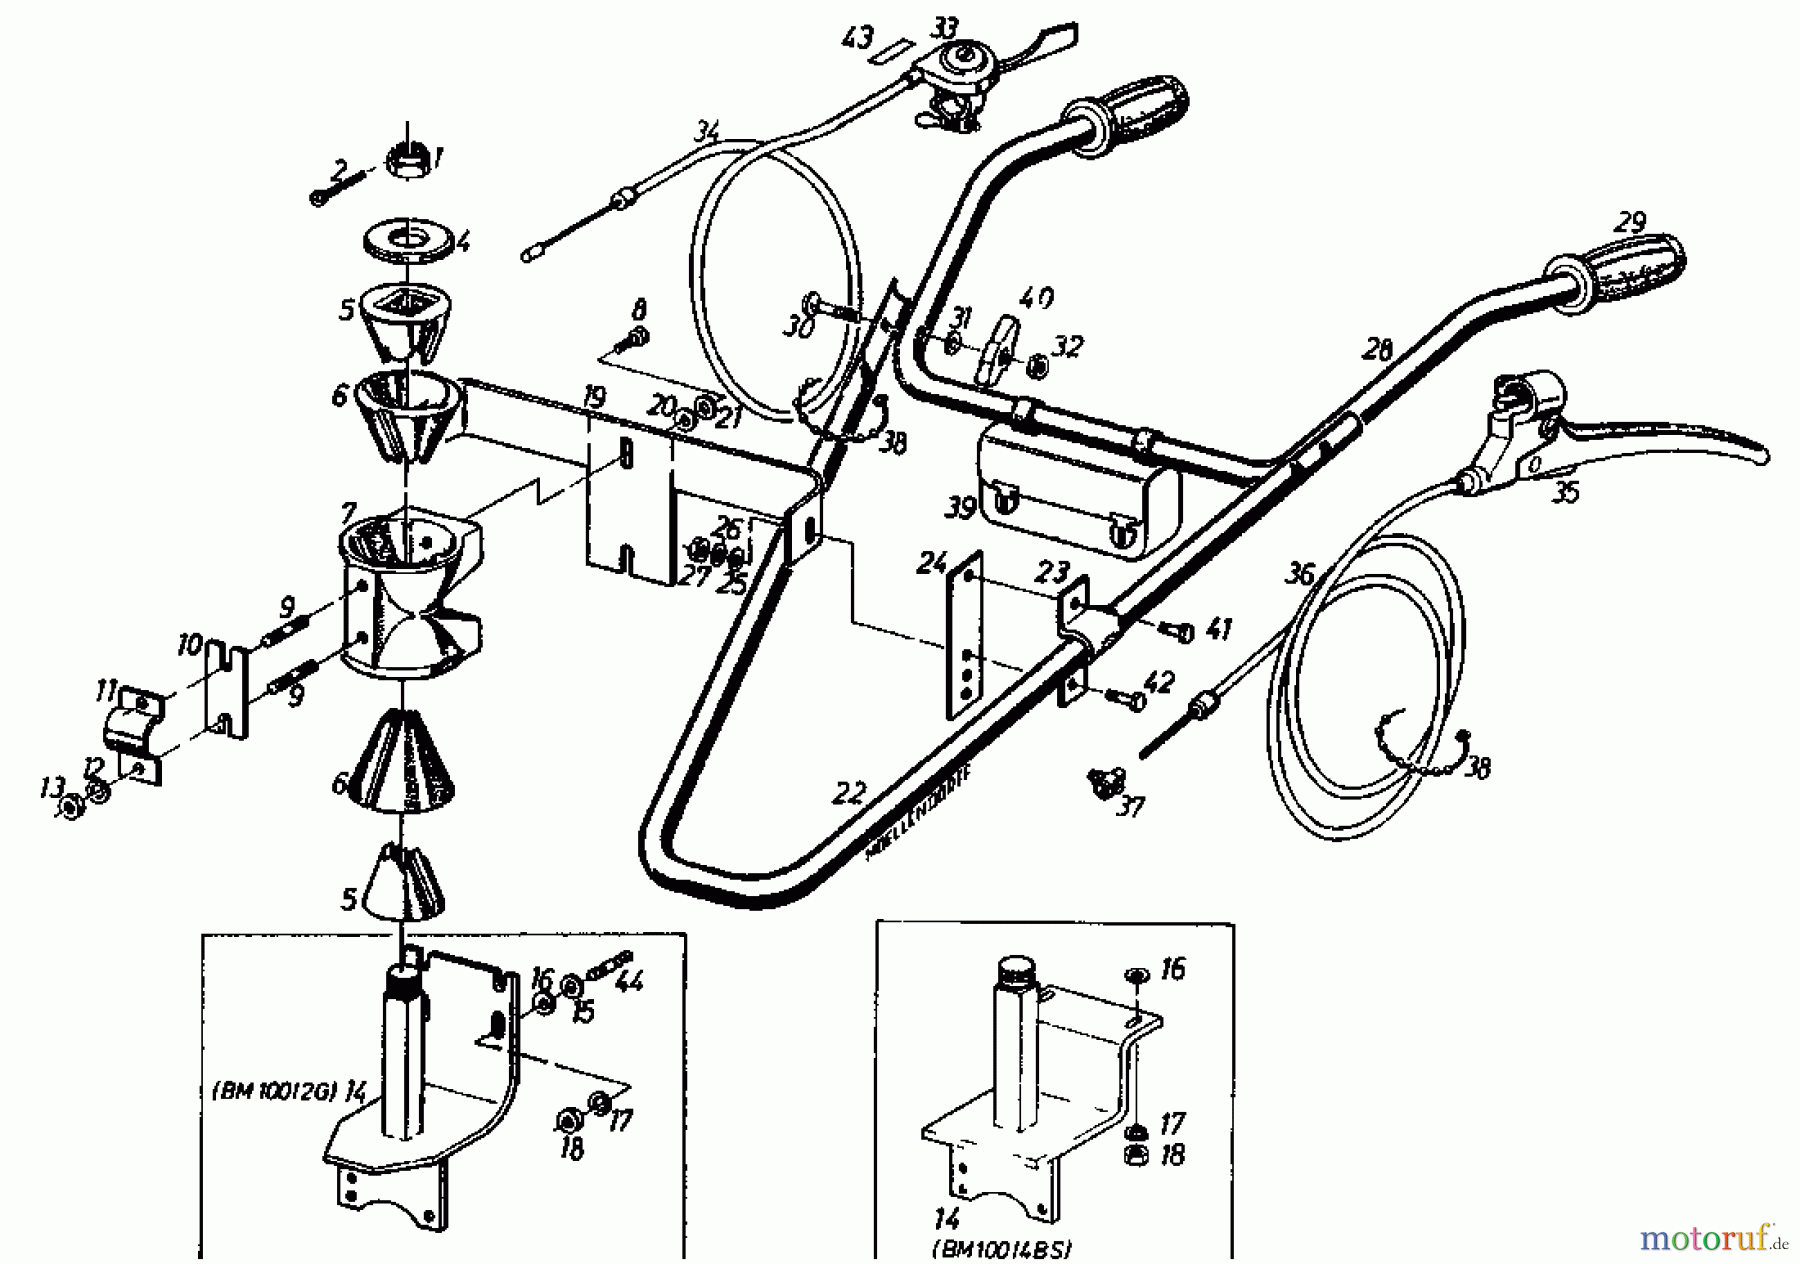  Gutbrod Cutter bar mower BM 100 4/BS 07507.01  (1985) Handle